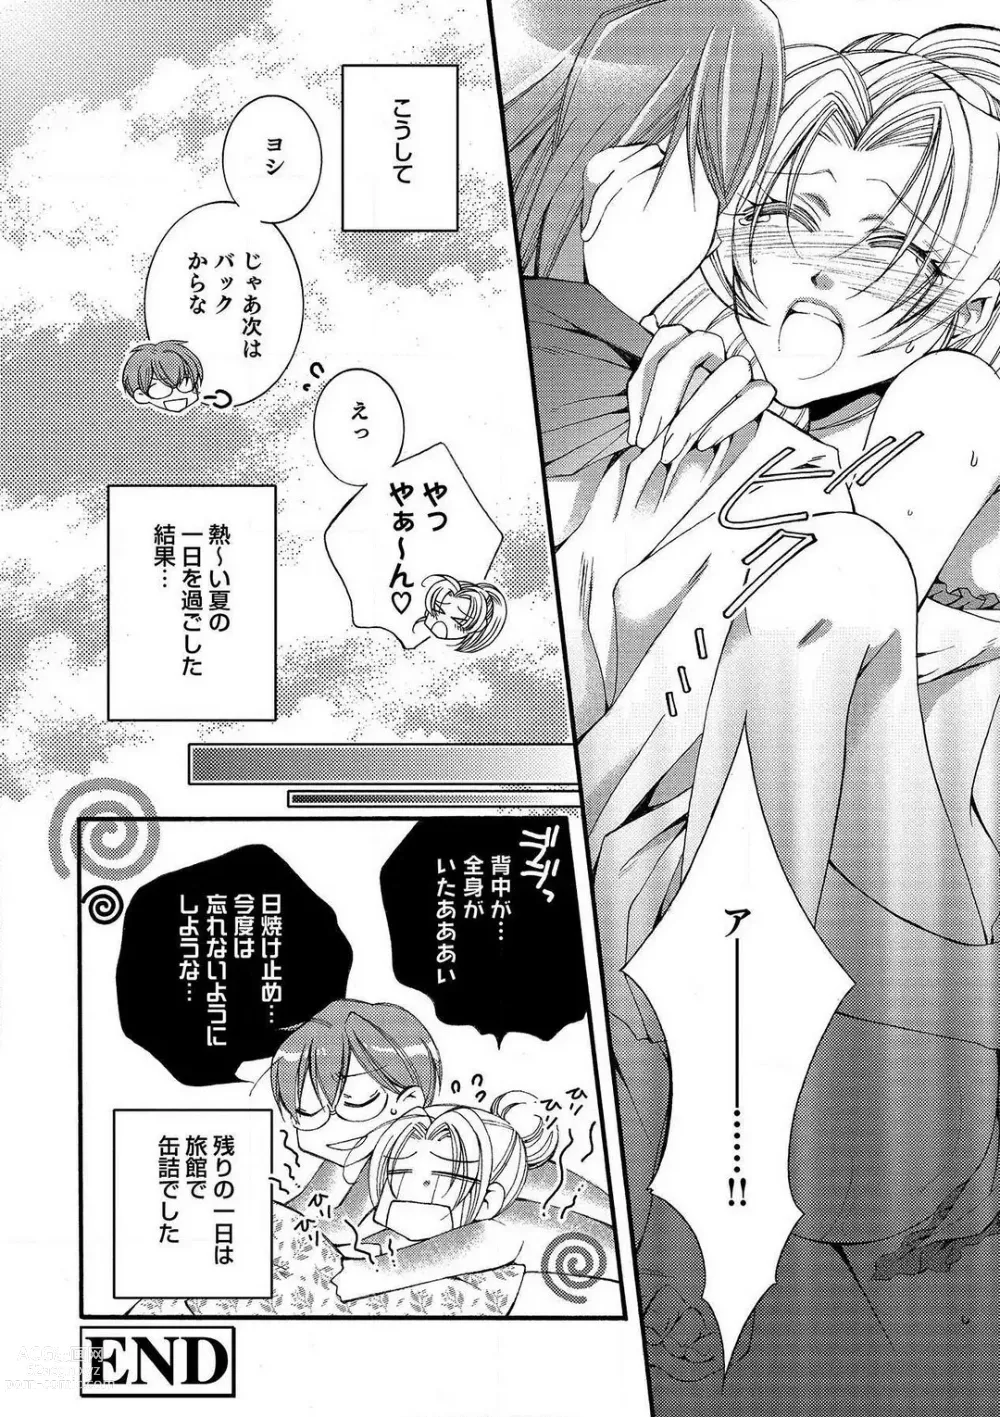 Page 72 of manga LOVE×PLAY 1-4